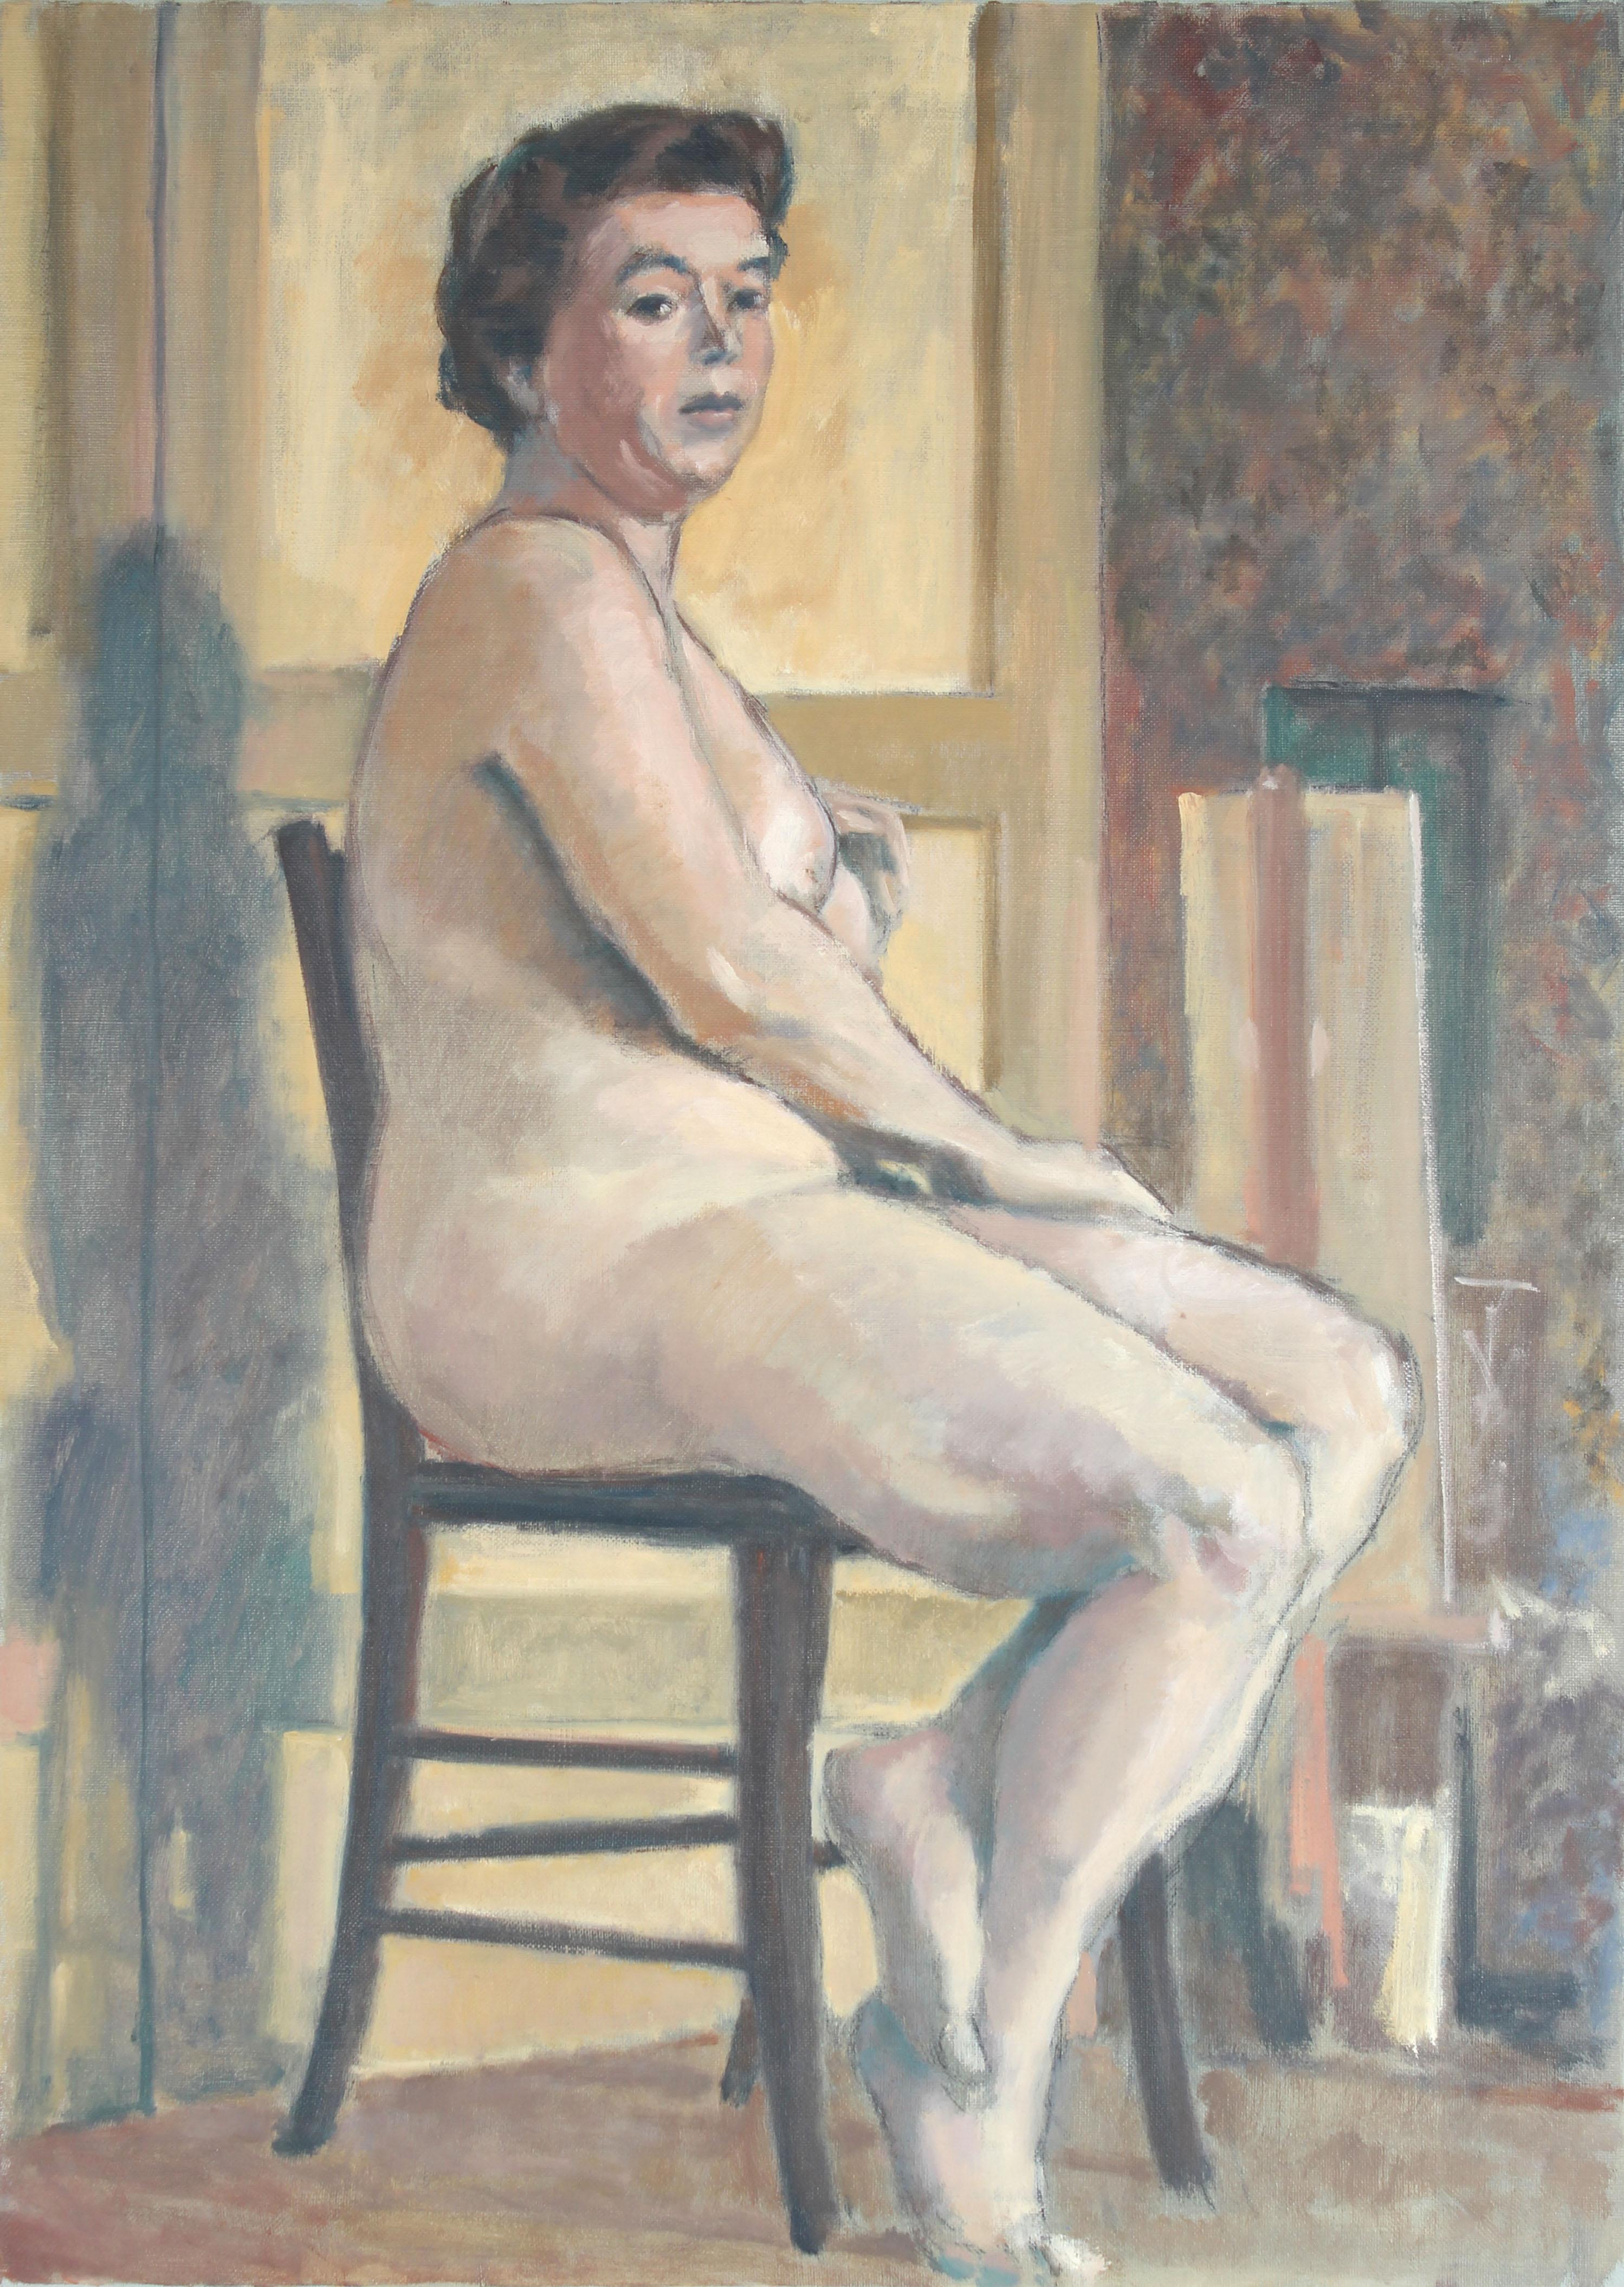 Rip Matteson Figurative Painting – Ölgemälde eines sitzenden weiblichen Akts aus den 1950er Jahren